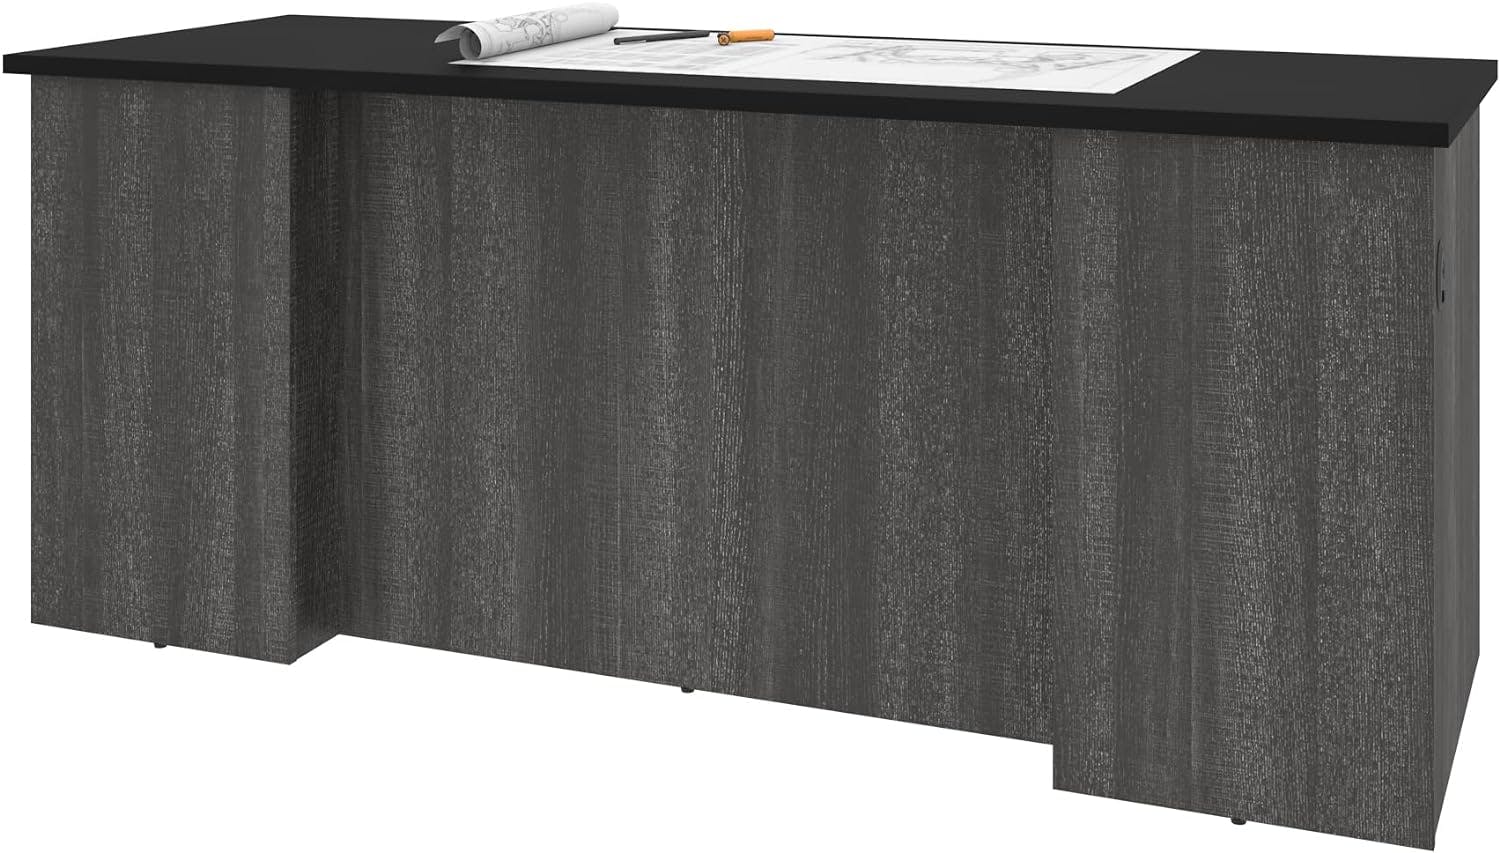 Contemporary Black and Bark Gray U-Shaped Executive Desk